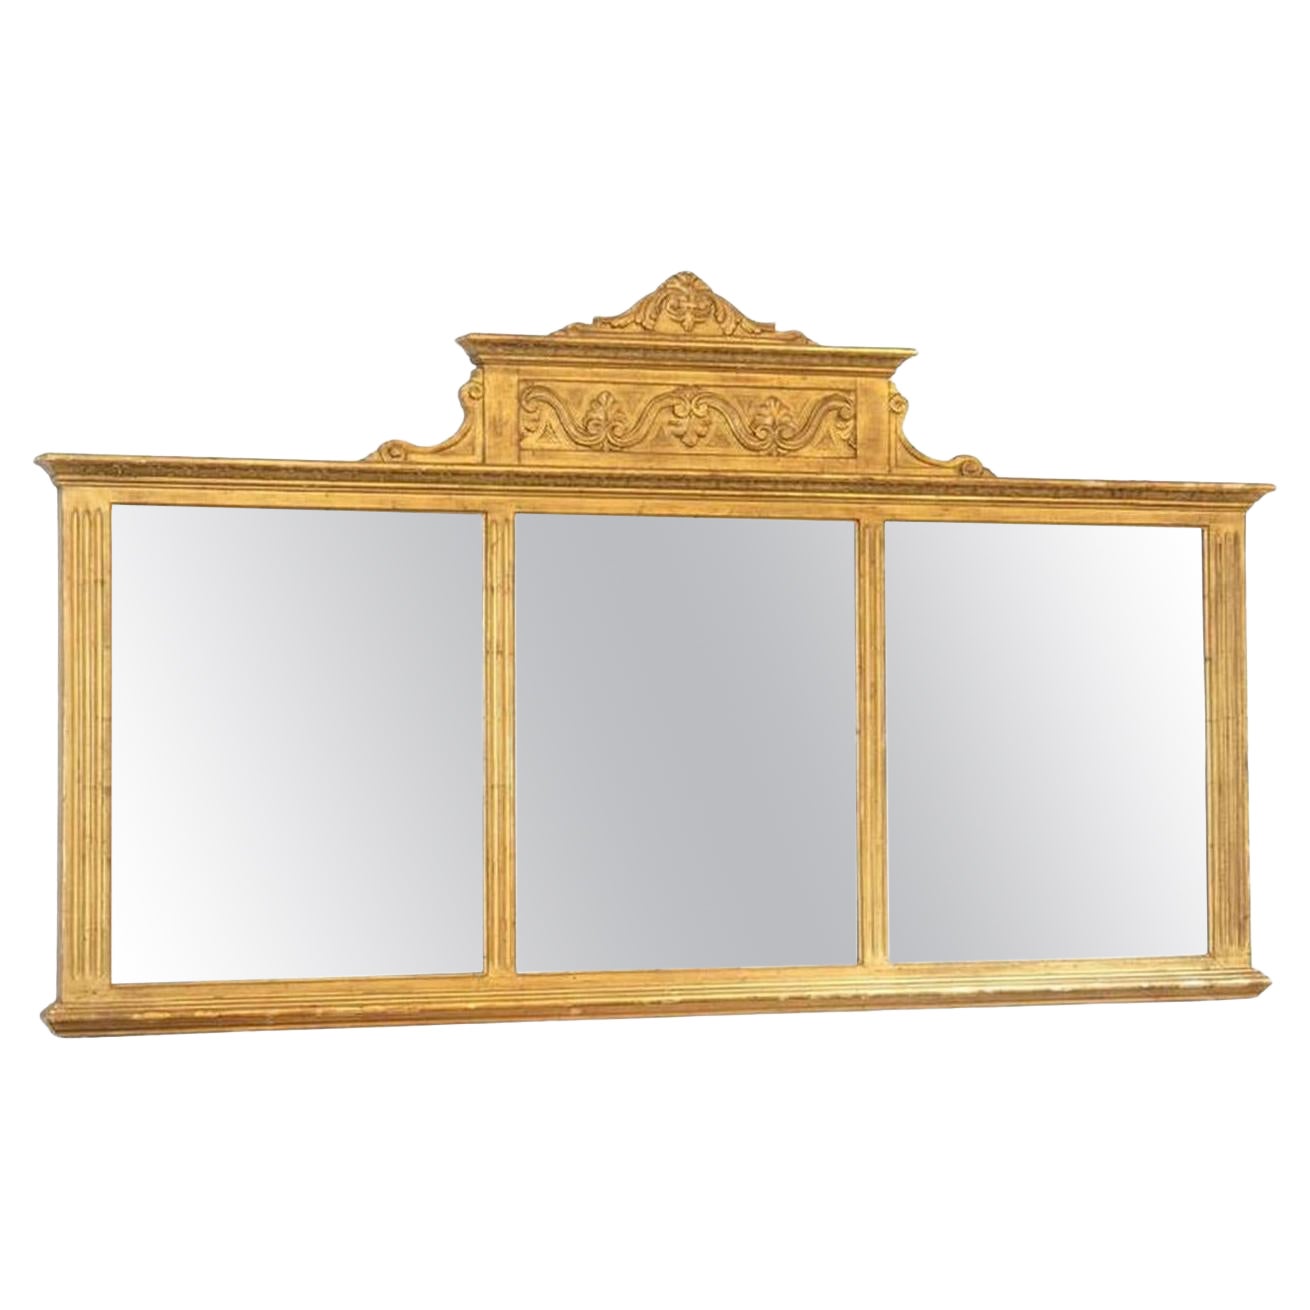 Neoclassical Overmantel Mirror - circa 1780 For Sale